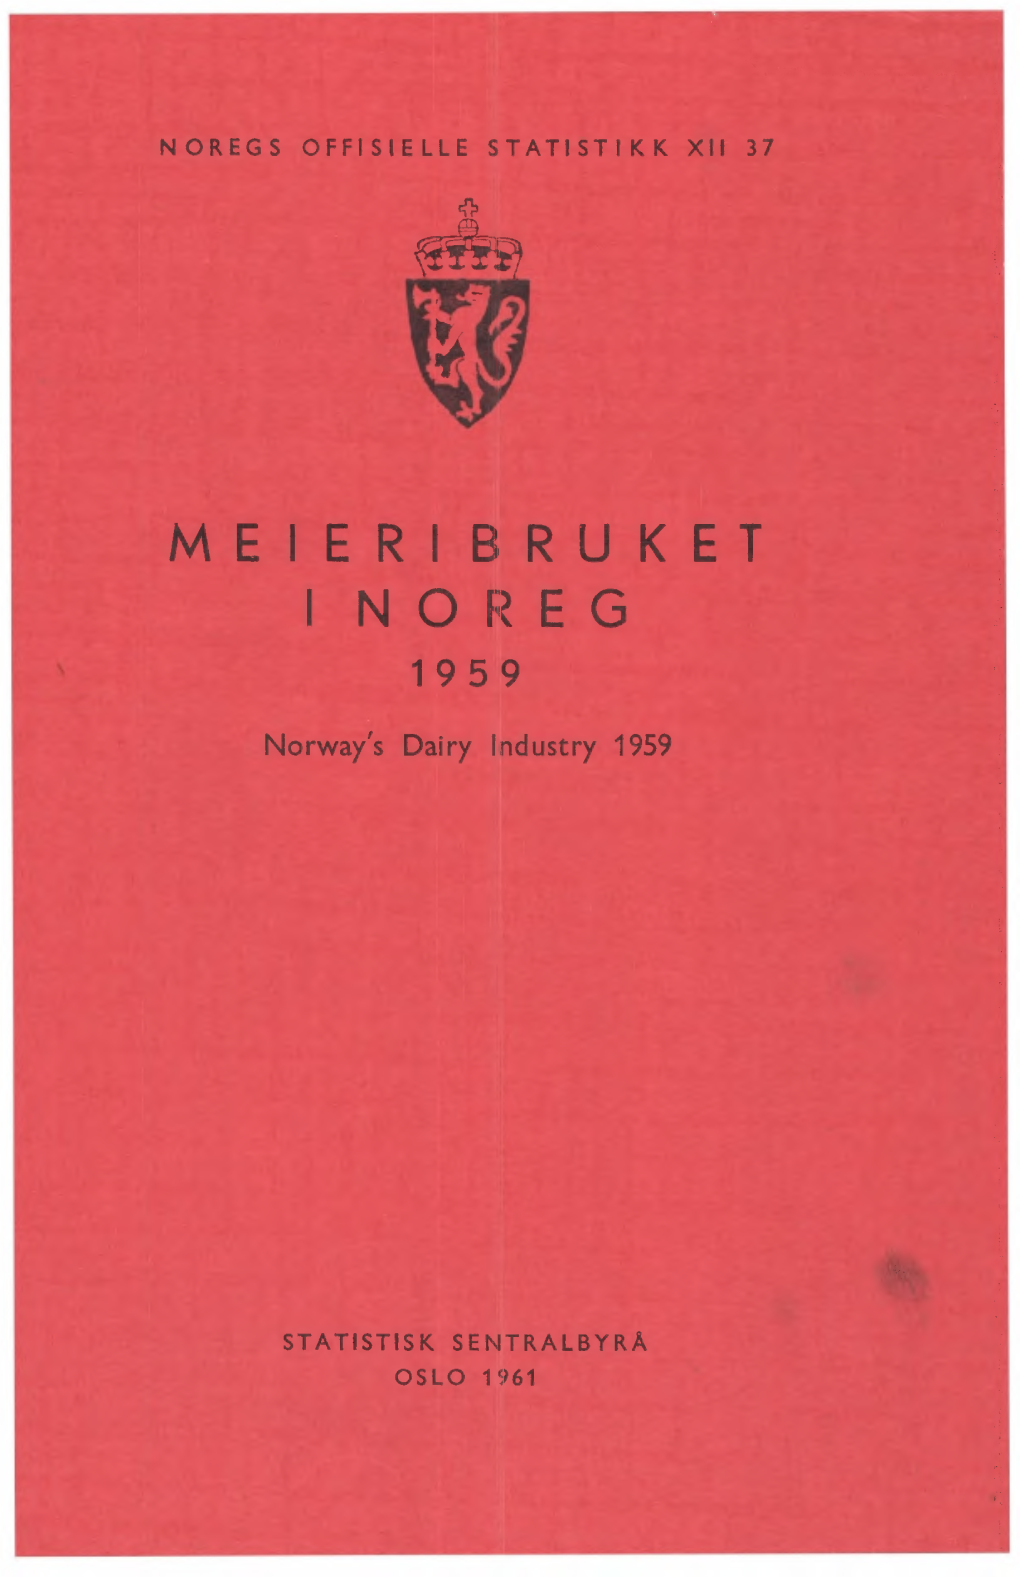 Meieribruket I Noreg 1959 Norway's Dairy Industry �O�EGS O��ISIE��E S�A�IS�IKK �II 37